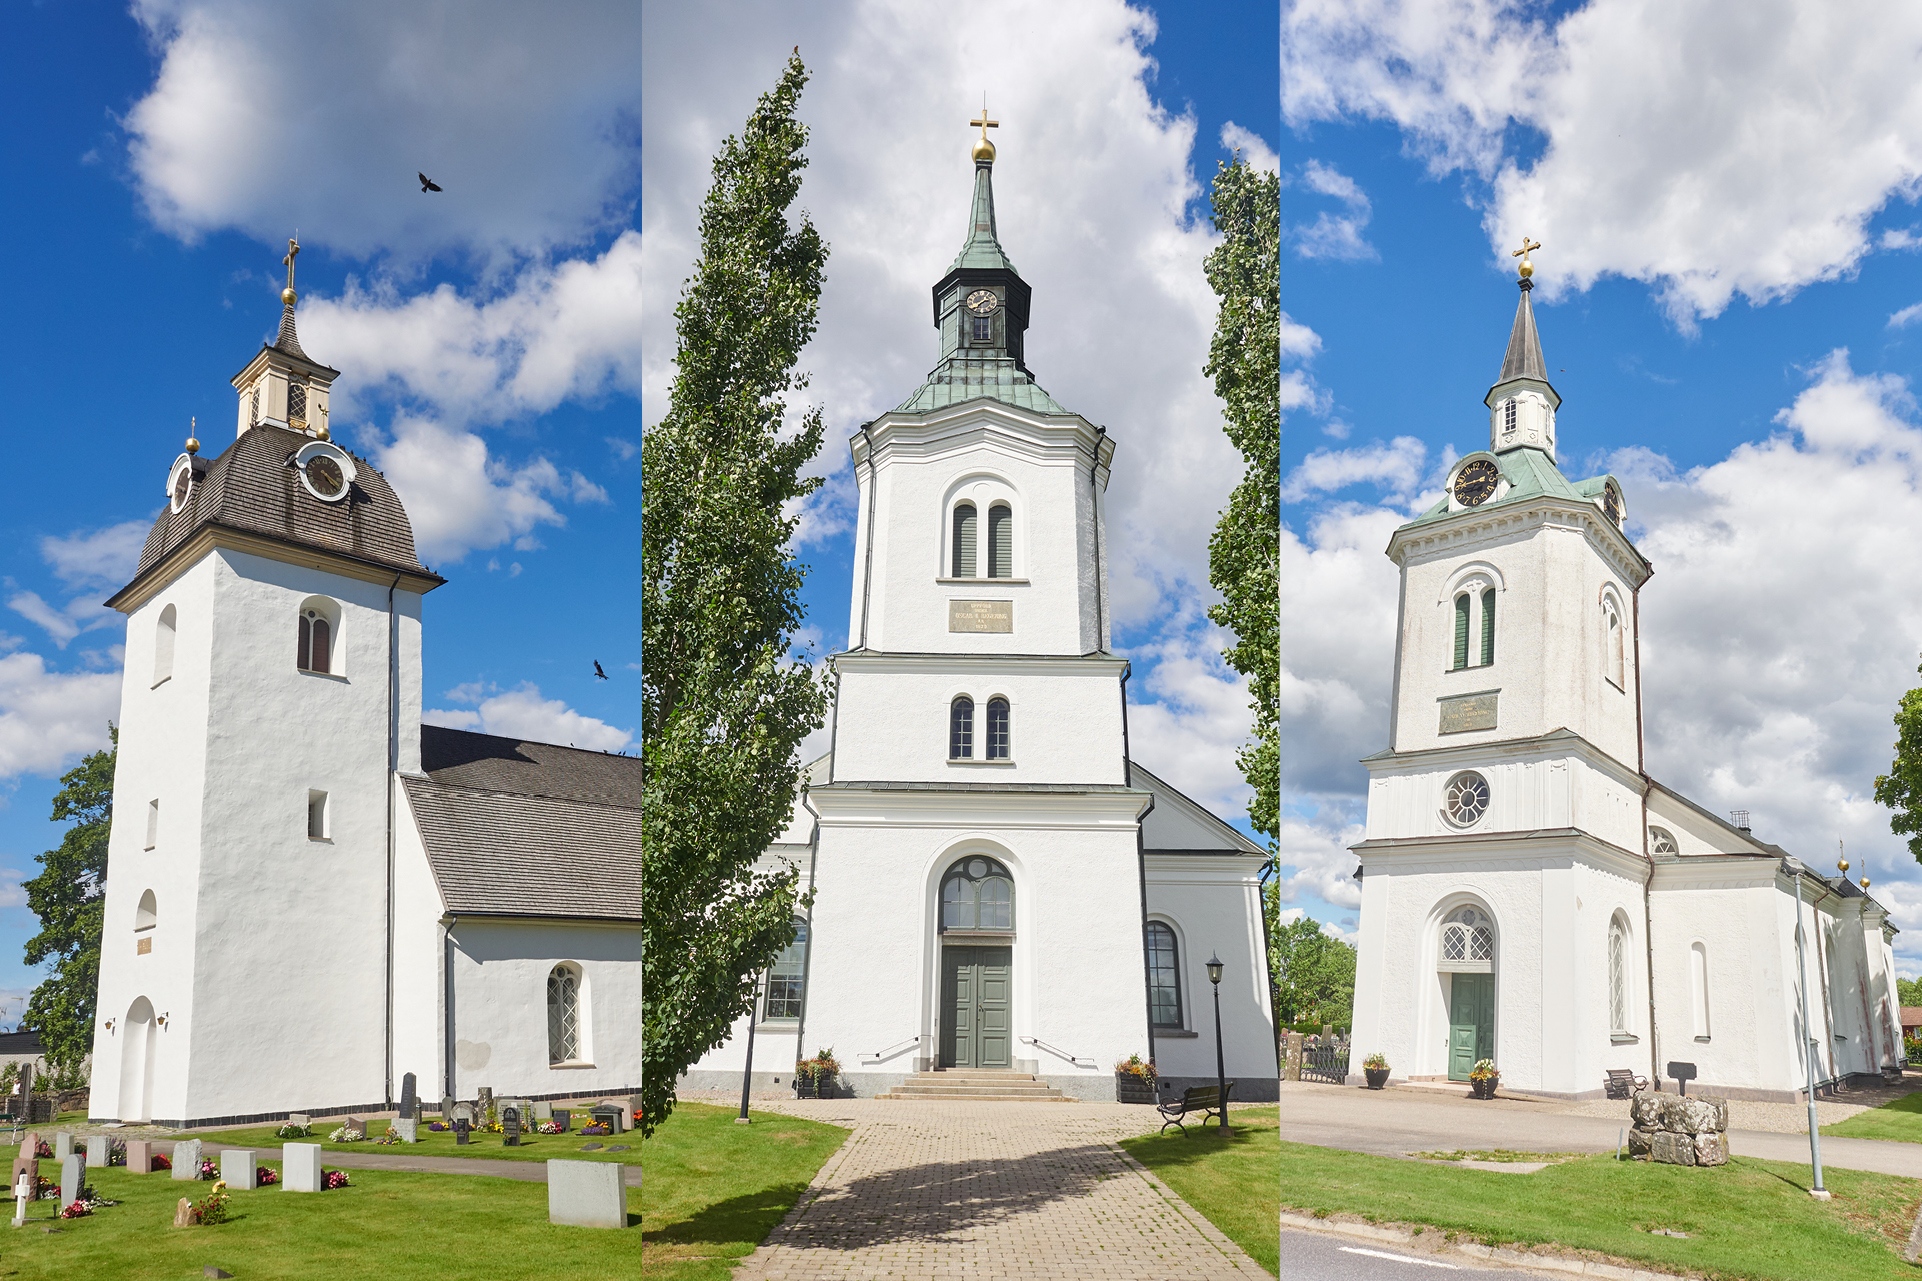 Kyrkorna i Söraby församling: Söraby kyrka, Tolgs kyrka och Tjureda kyrka.